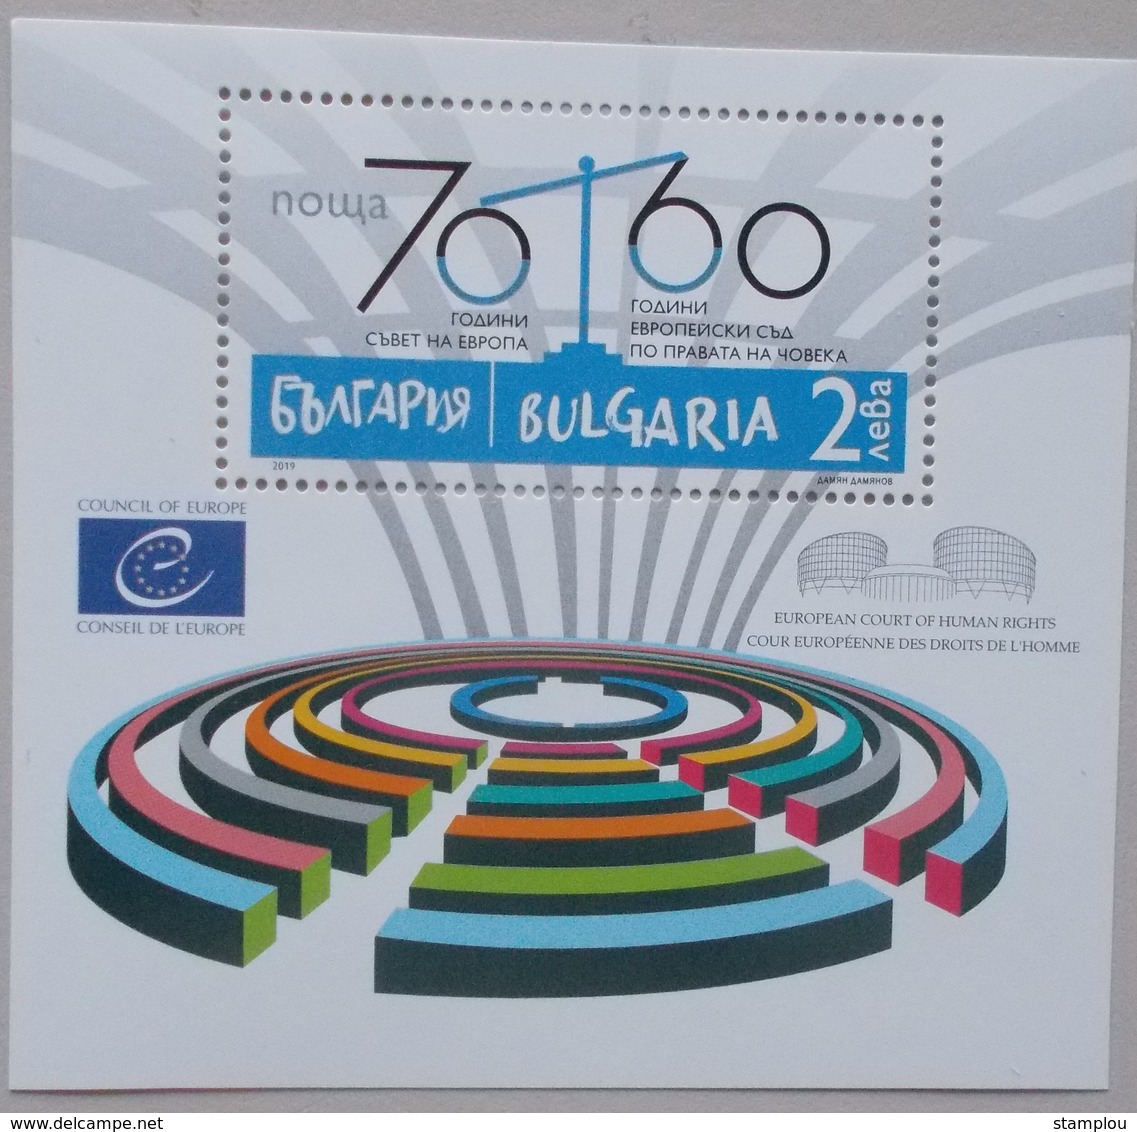 Bulgarije-Bulgaria 2019 70th Ann.Council Of Europe - 60th Ann.Europe Court Of Human R. - Europese Gedachte